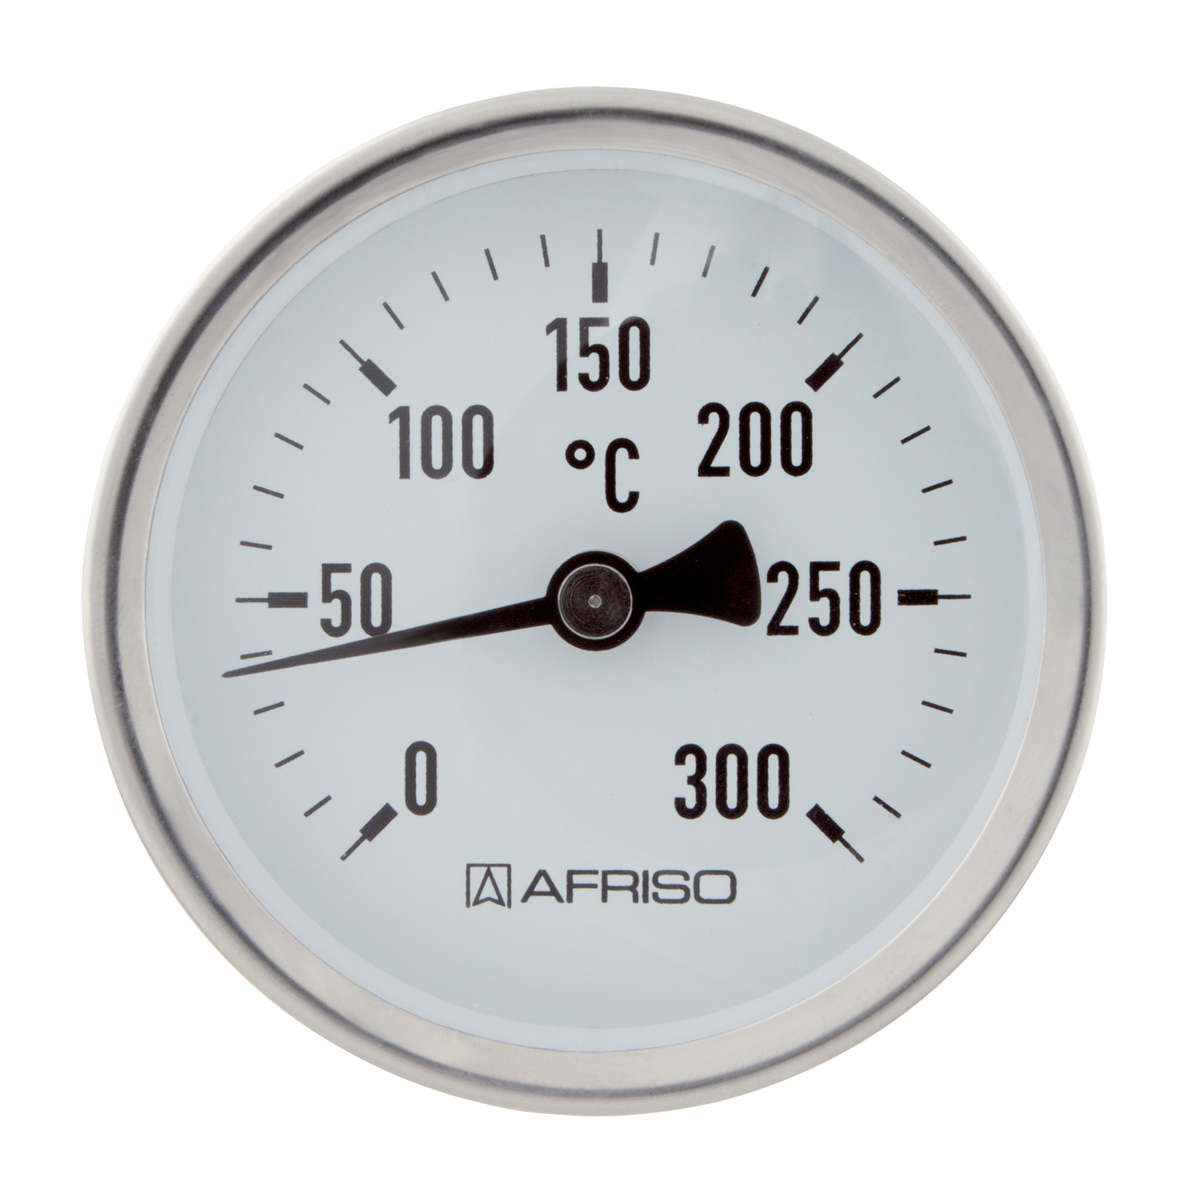 AFRISO Rauchgasthermometer RT 80 0/300C 150mm verstellbarer Konus 8-12mm Kl.2 VOR 90730 90740 object_image_71864imagemain_en